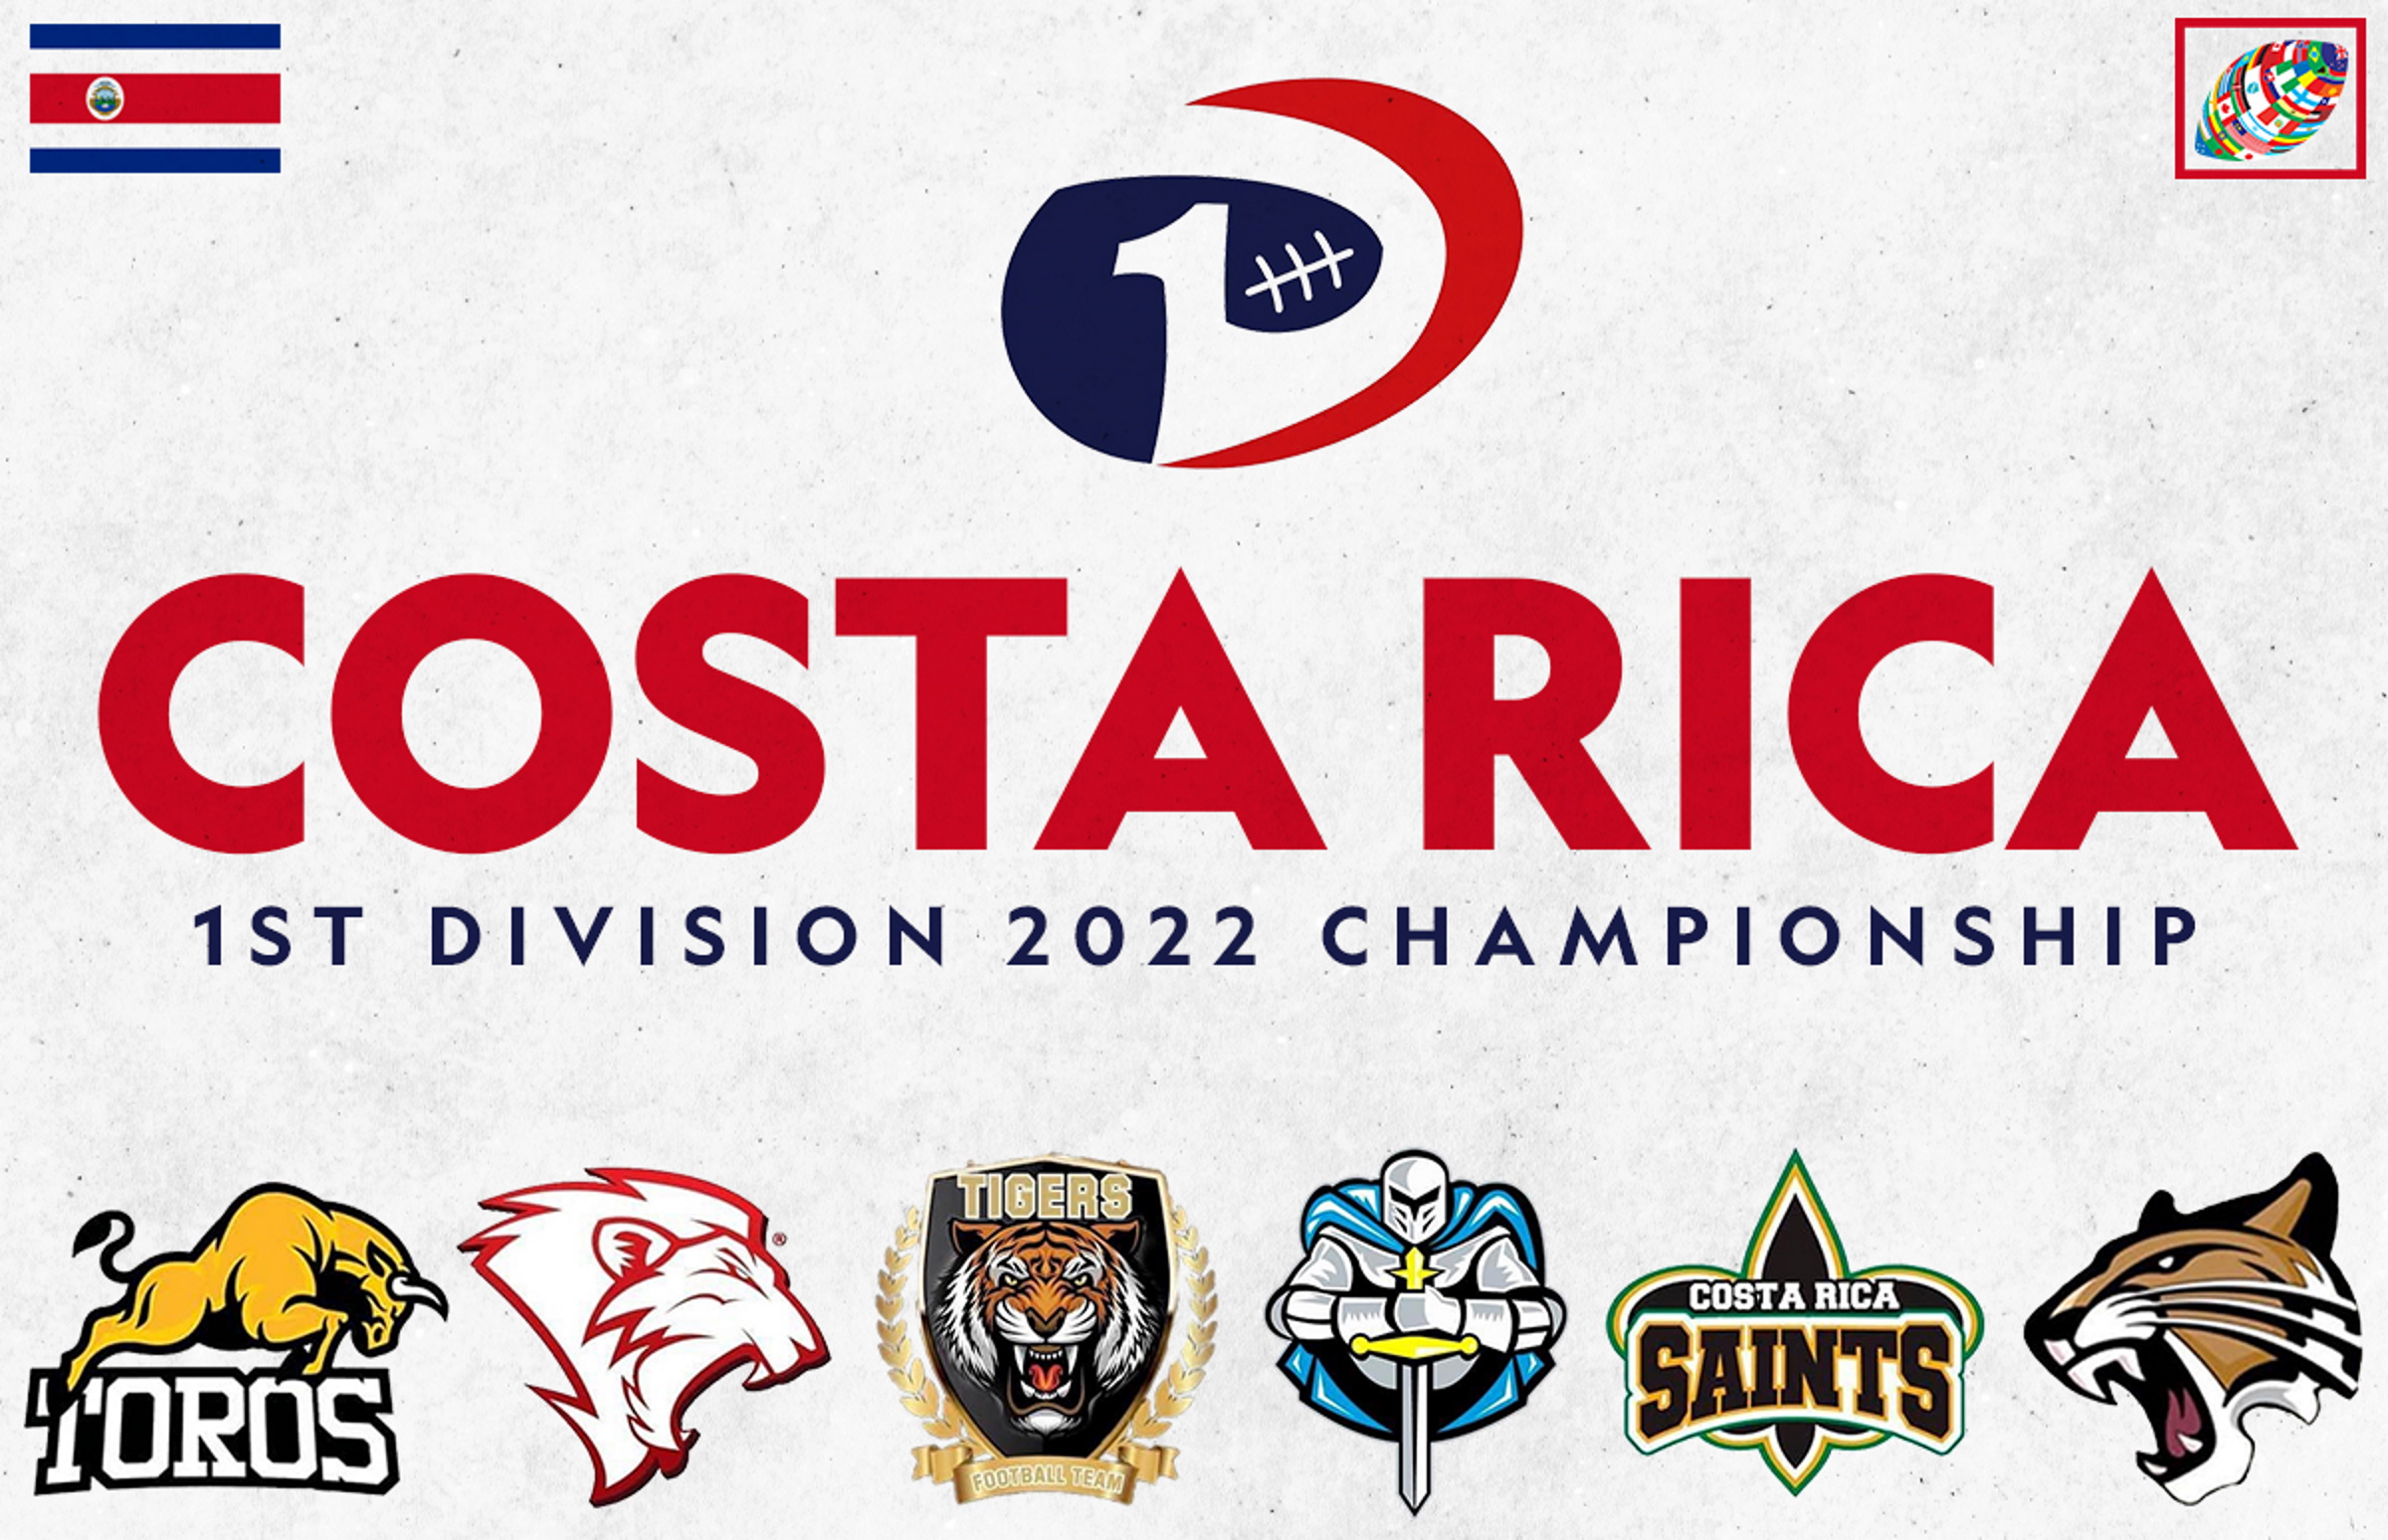 Costa Rica: Men's 1st Division 2022 Championship Season set to start